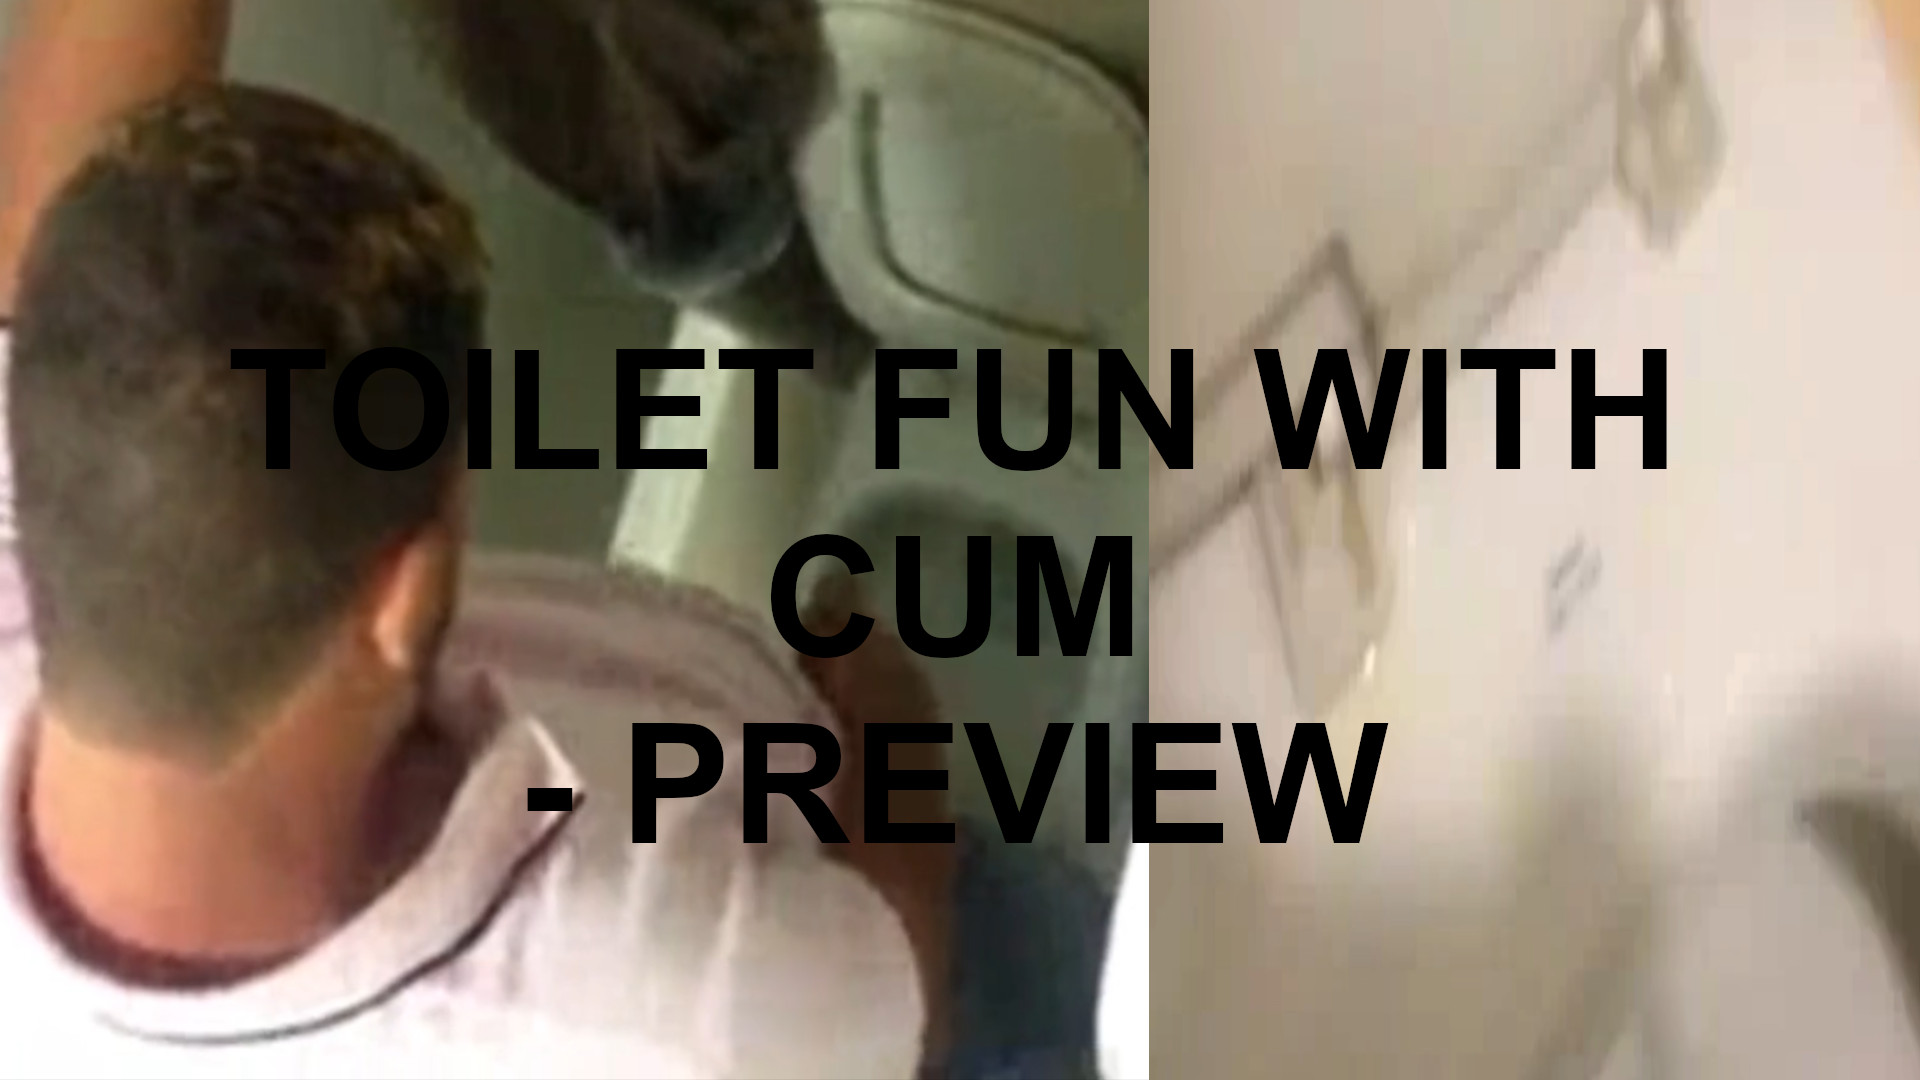 Toilet fun with cum